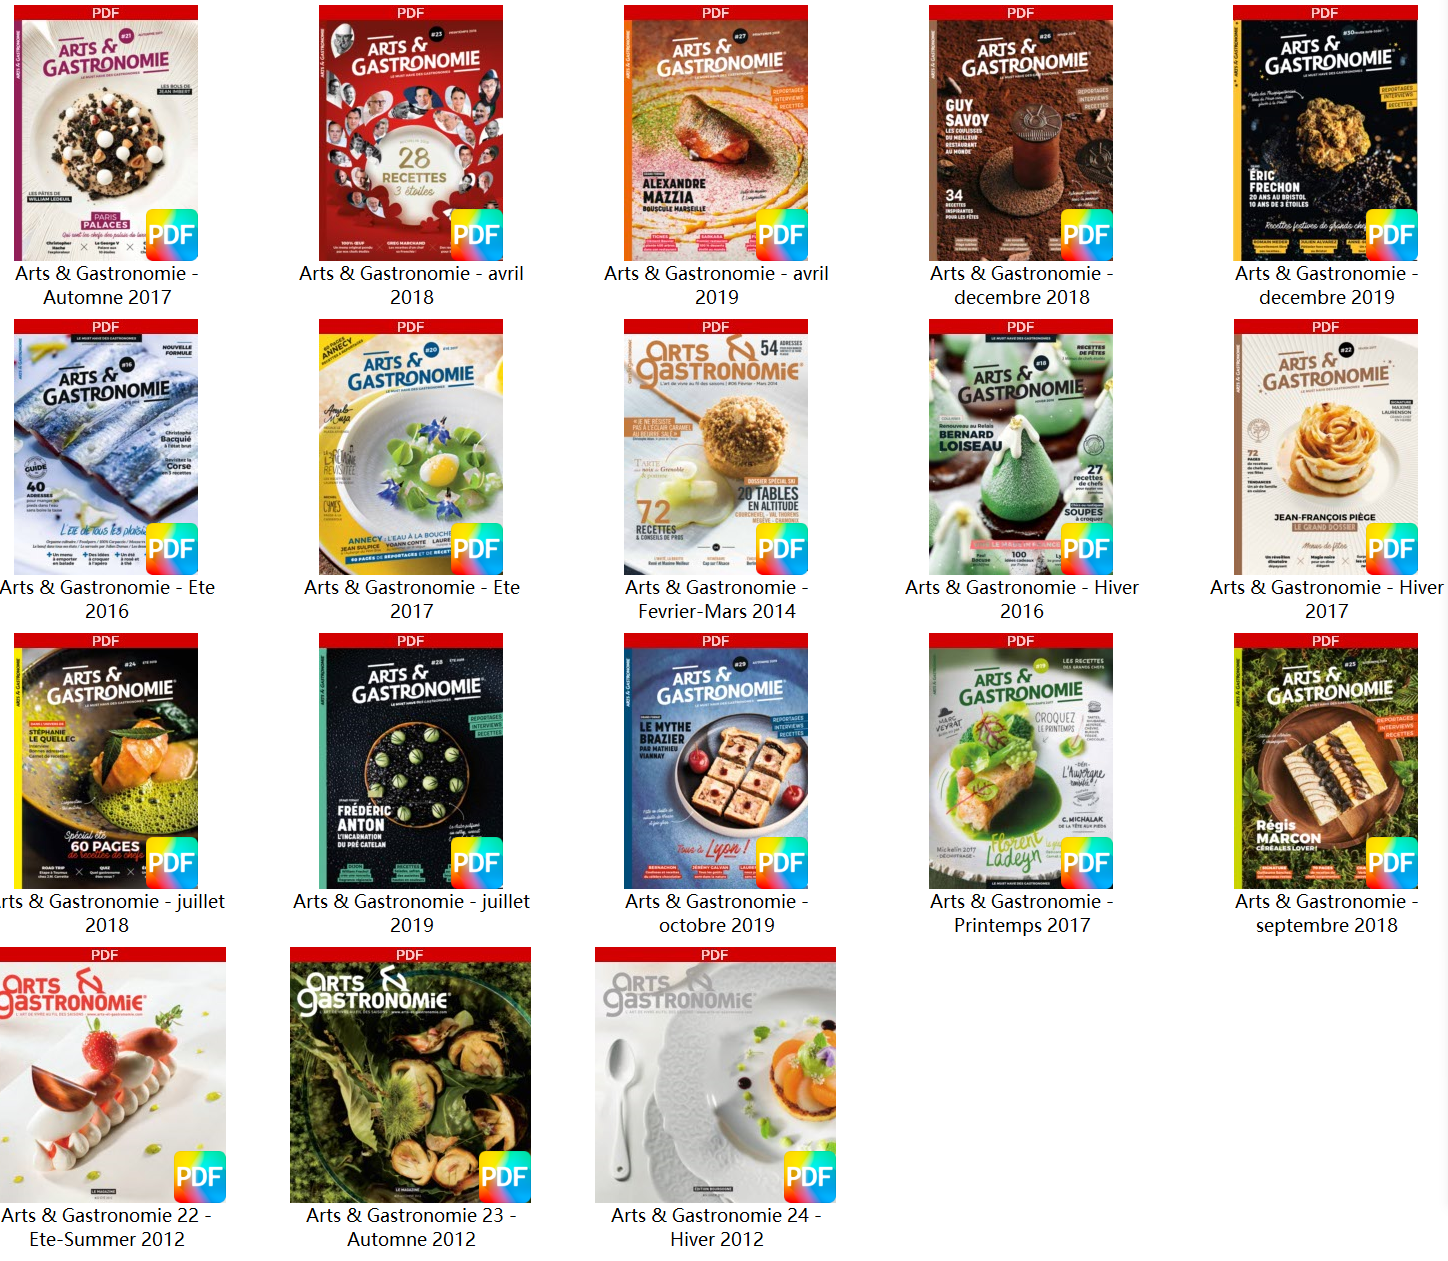 [法国版]Arts & Gastronomie高端西餐烹饪艺术2012-2019美食烘培杂志(18本合集)